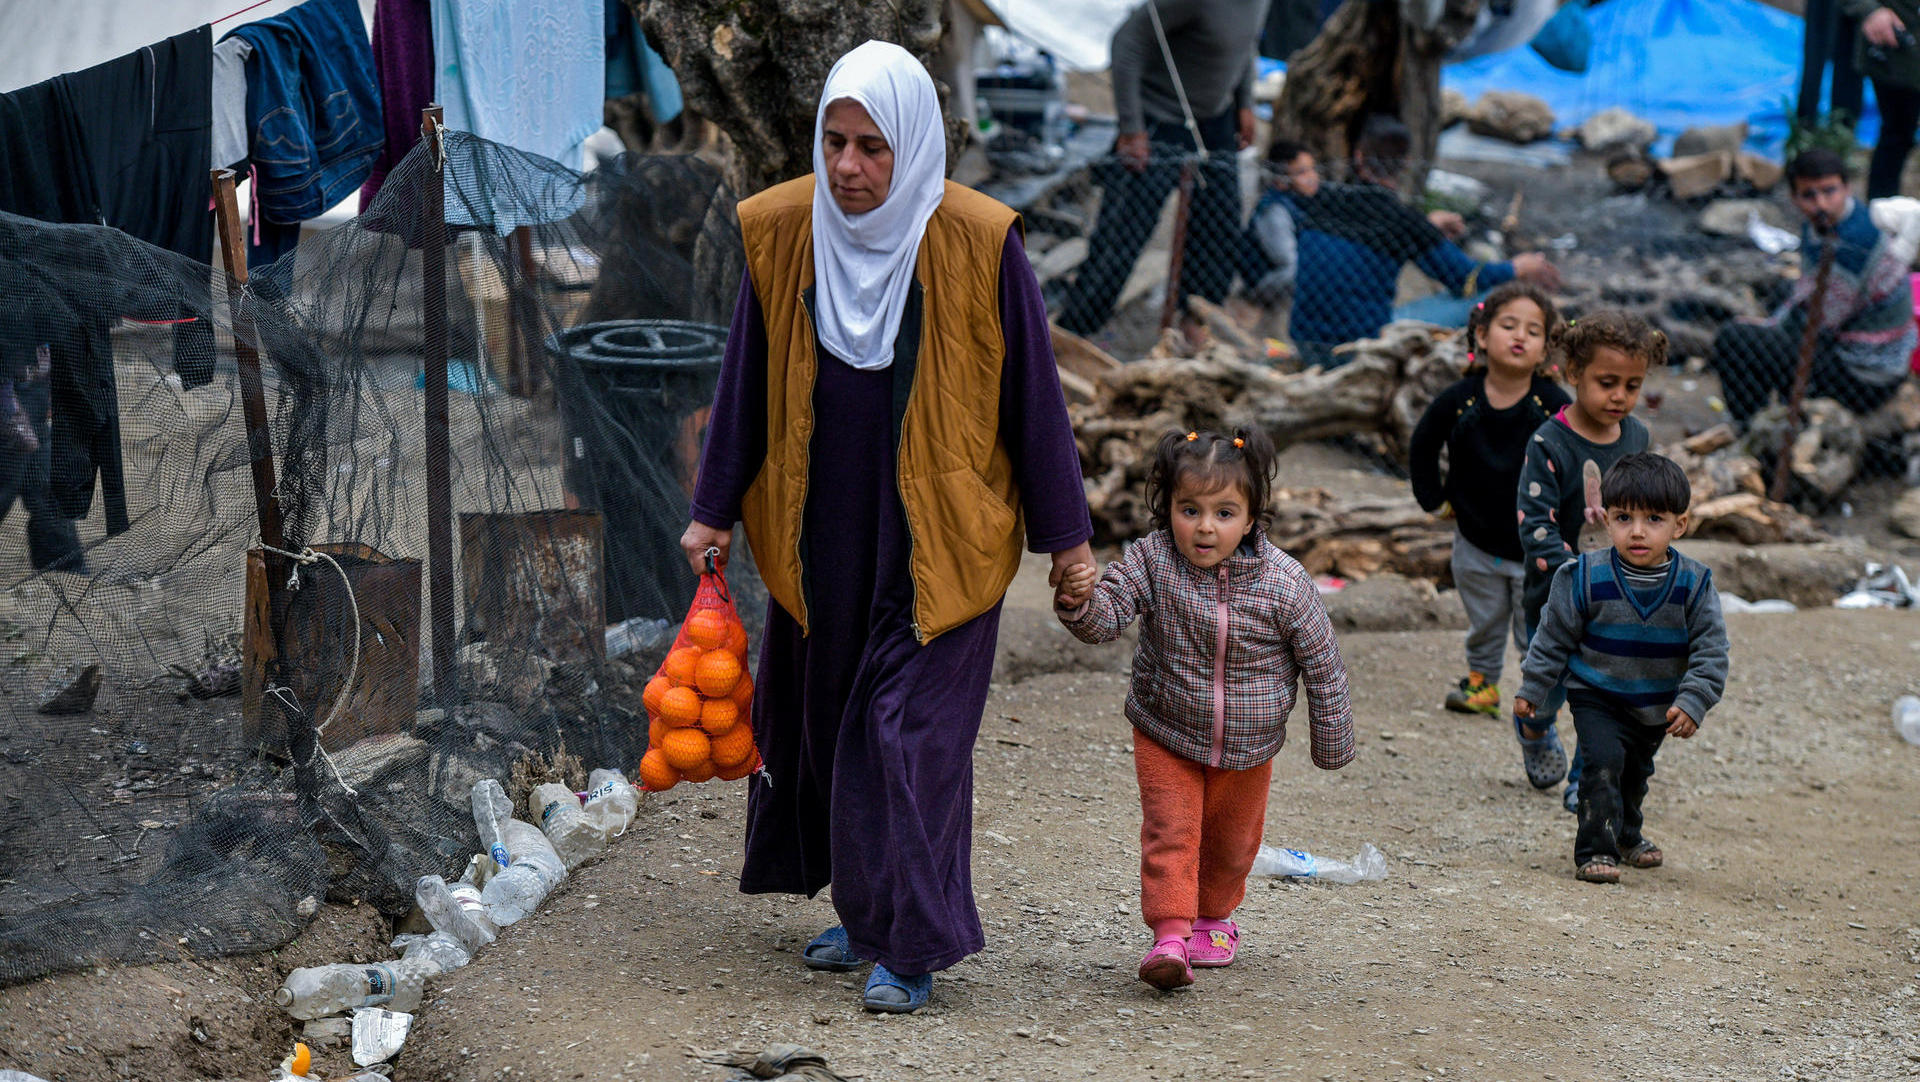 Essens- und Wasserversorgung für Flüchtlinge auf Lesbos reduziert